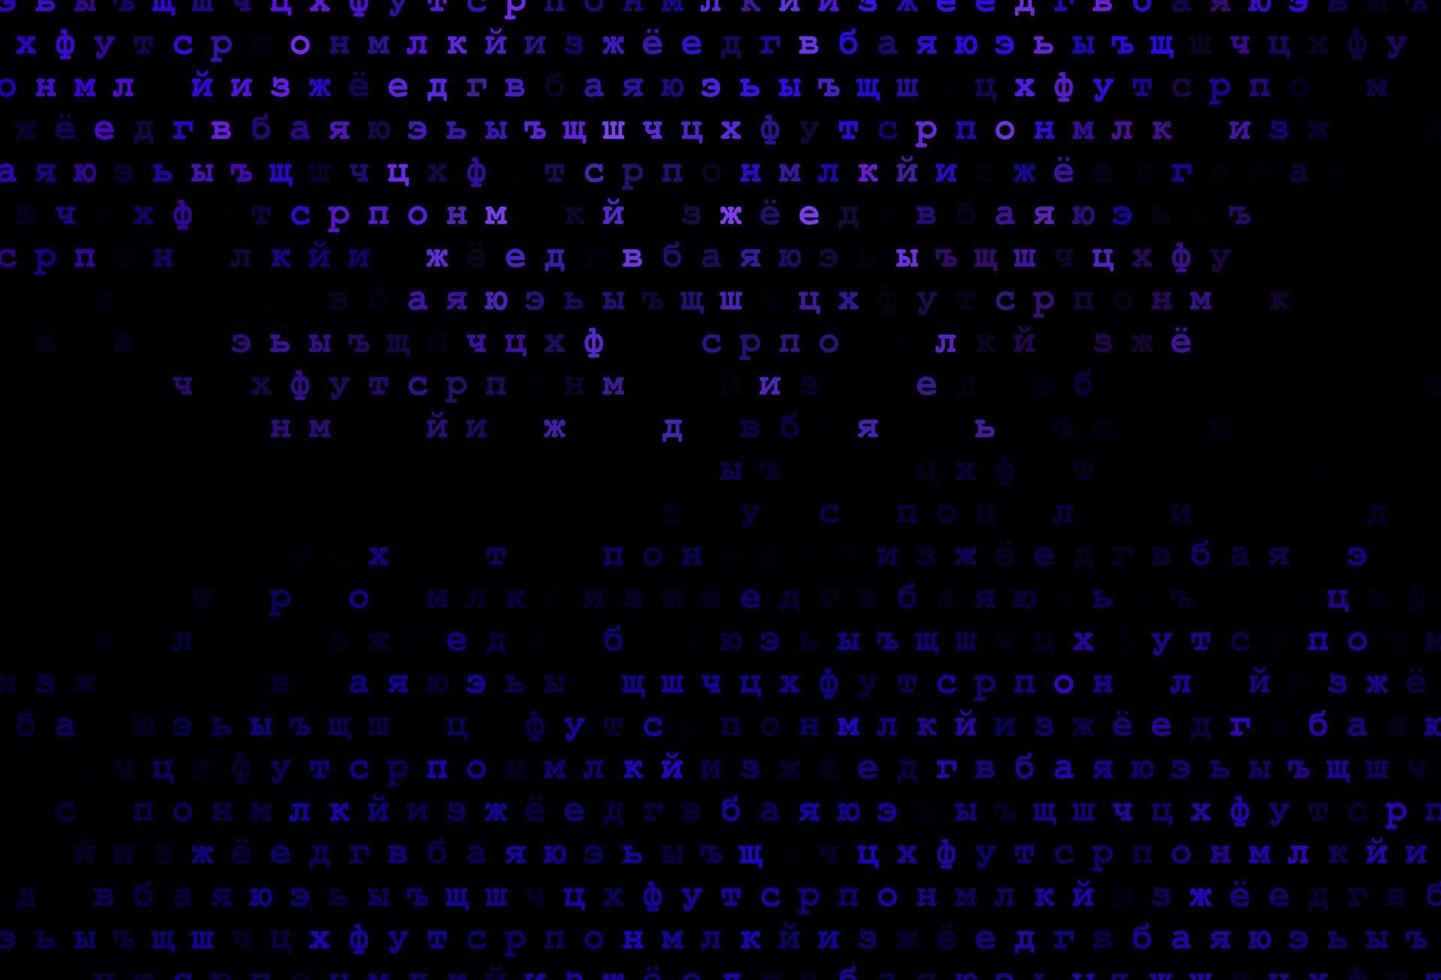 cubierta de vector de color púrpura oscuro con símbolos en inglés.